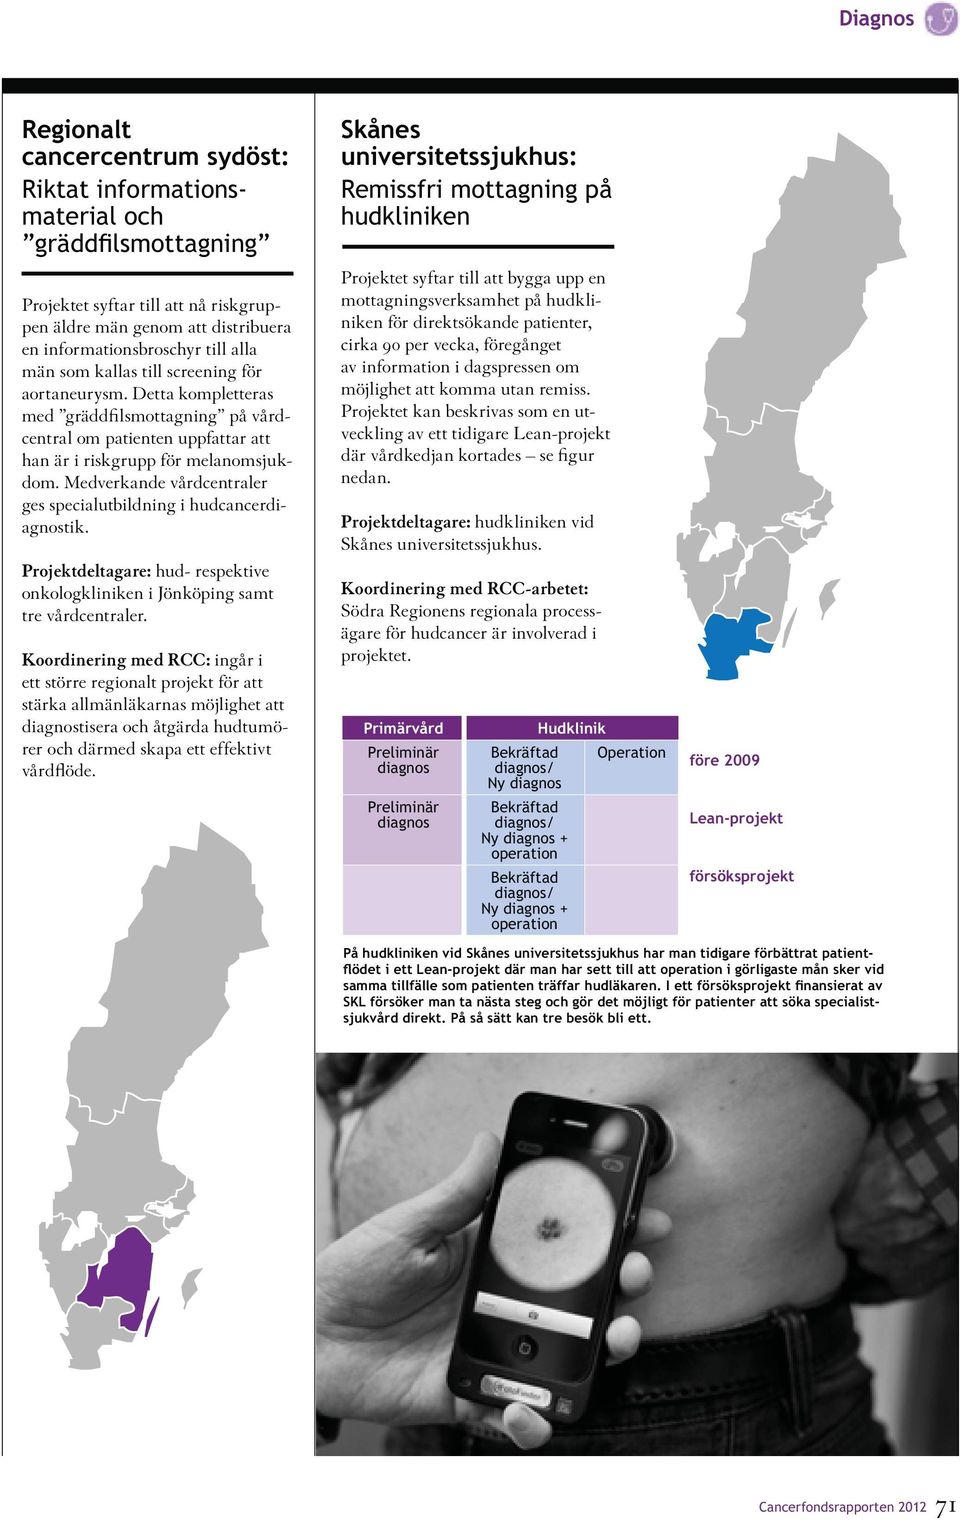 Medverkande vårdcentraler ges specialutbildning i hudcancerdiagnostik. Projektdeltagare: hud- respektive onkologkliniken i Jönköping samt tre vårdcentraler.